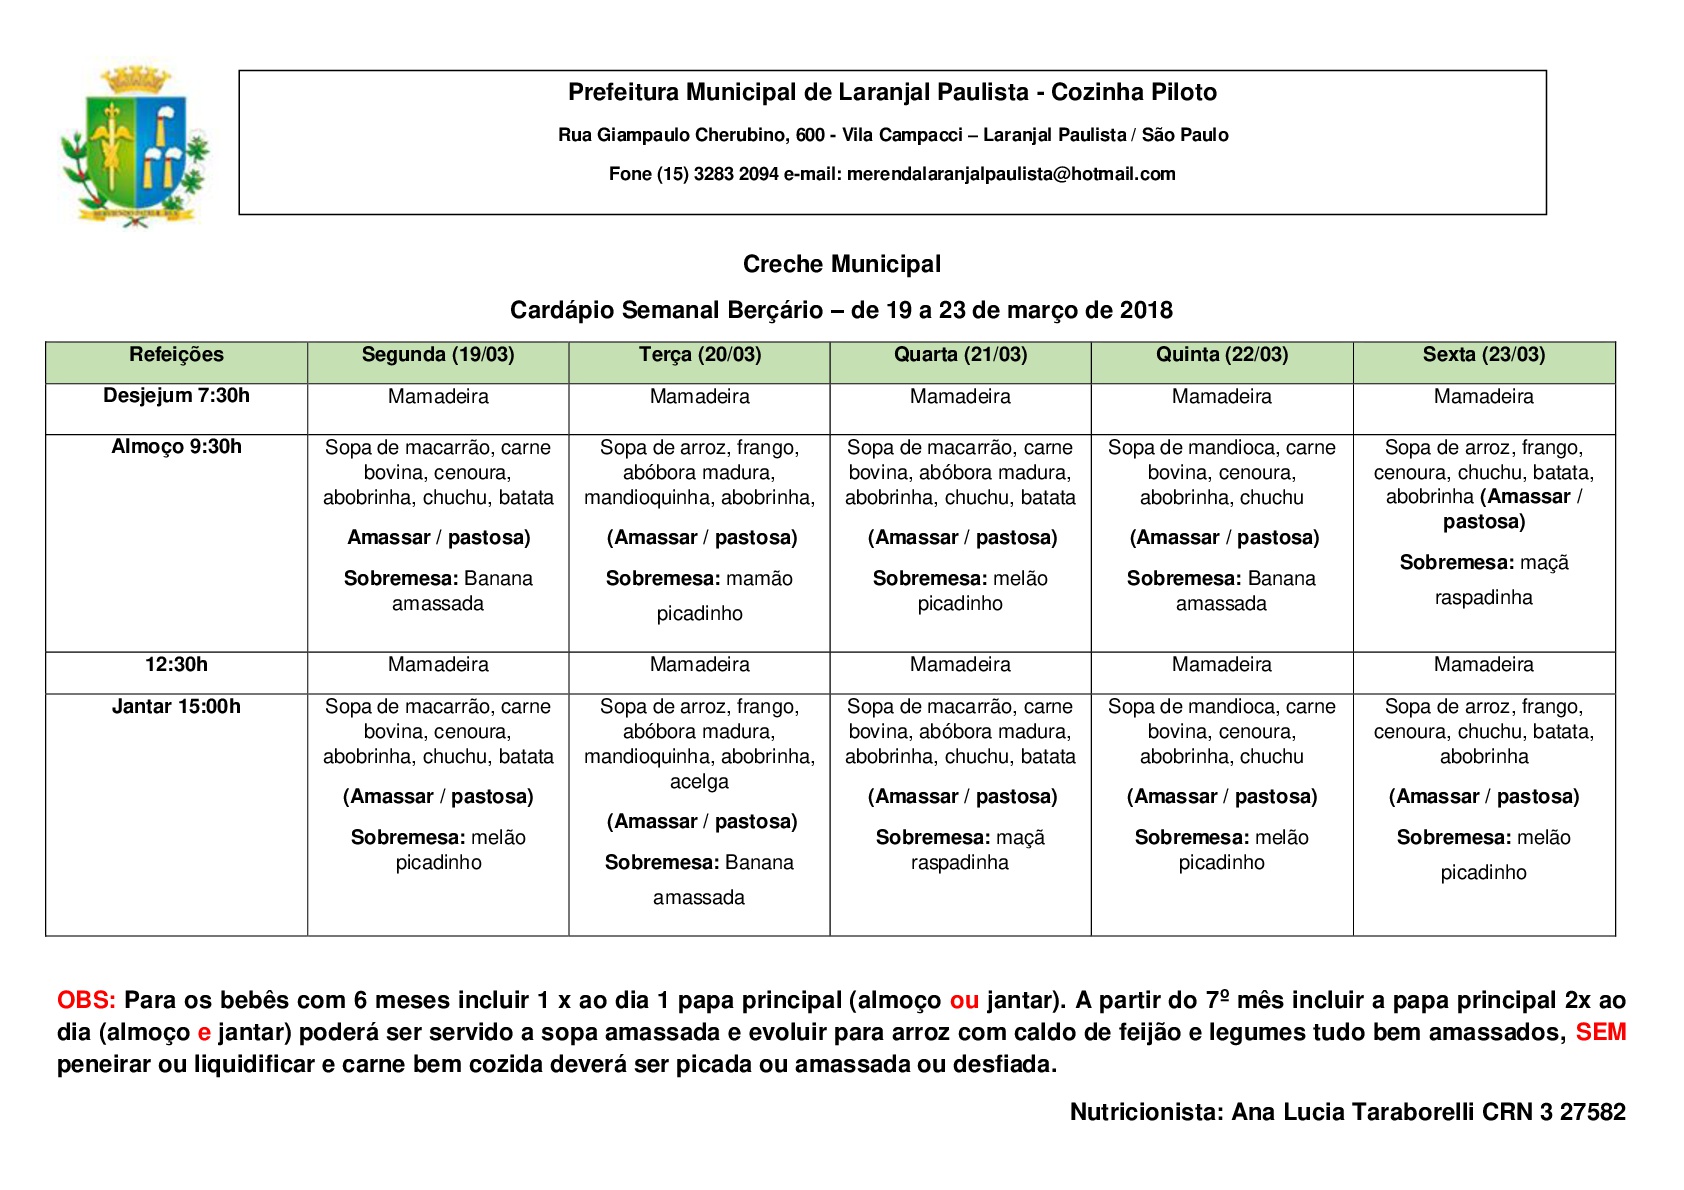 Cardápios para o mês de Março das Escolas e Creches de Laranjal Paulista.